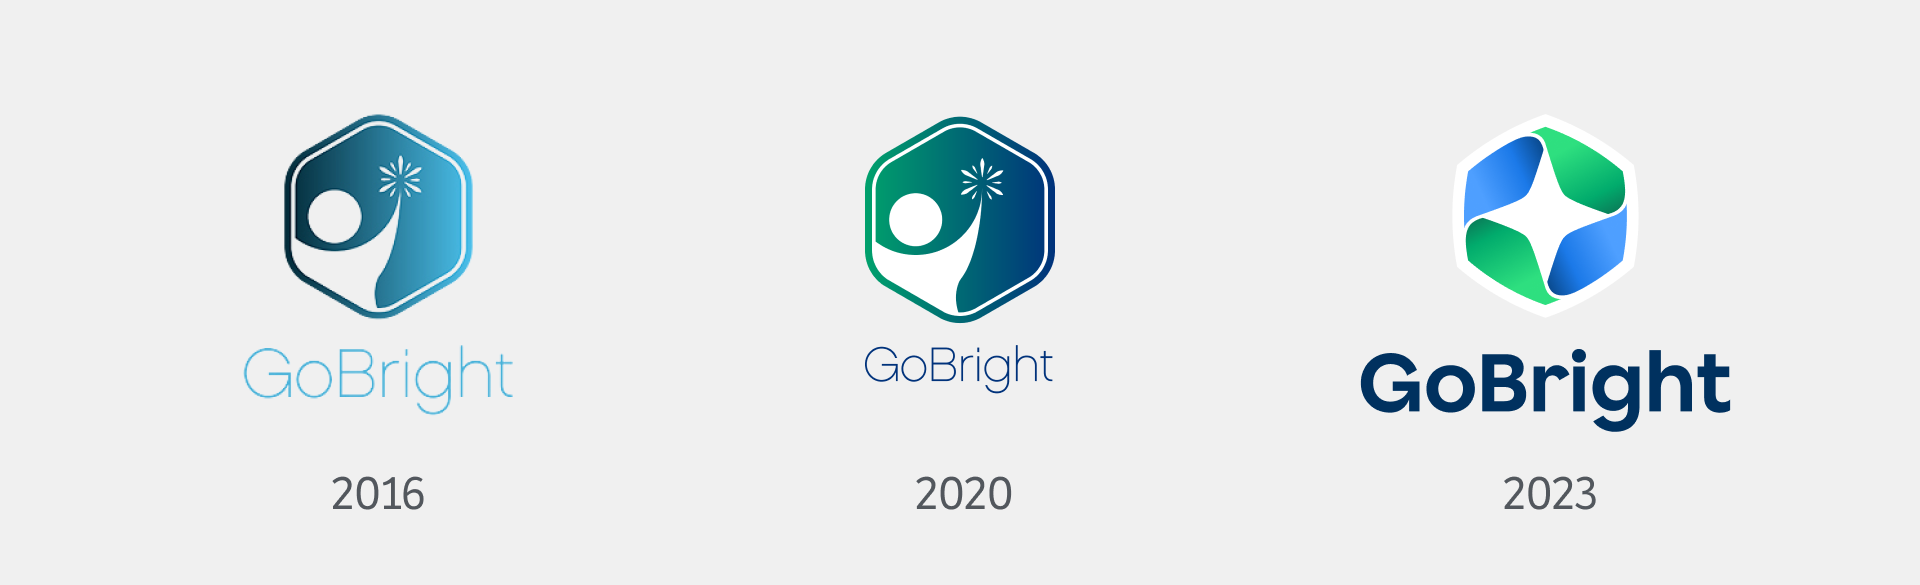 GoBright - Huisstijl - logo het hele jaar door - Rebranding